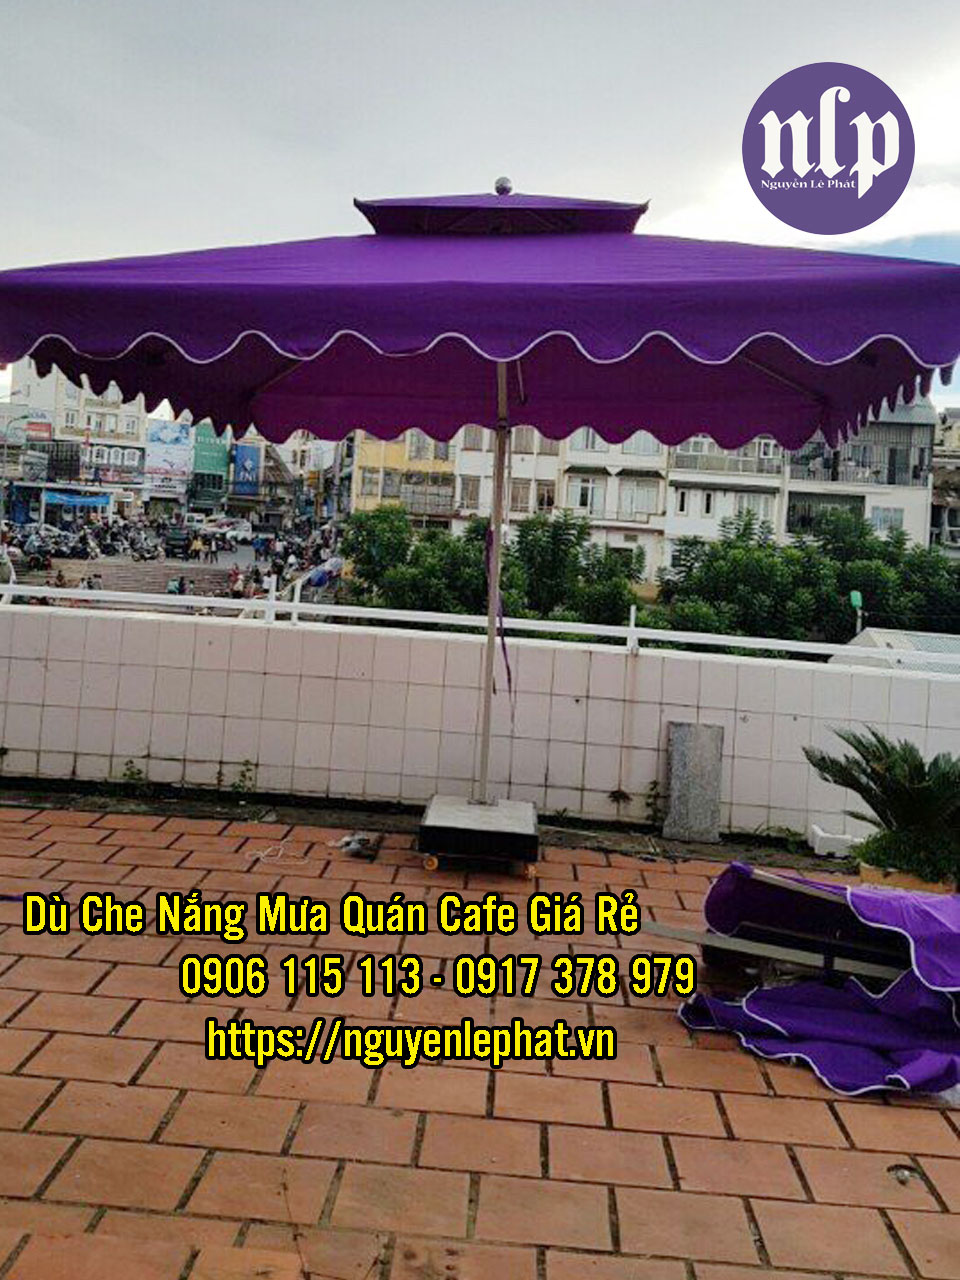 Dù Che Nắng Quán Cafe TP HCM - Bảng Báo Giá Dù Lệch Tâm